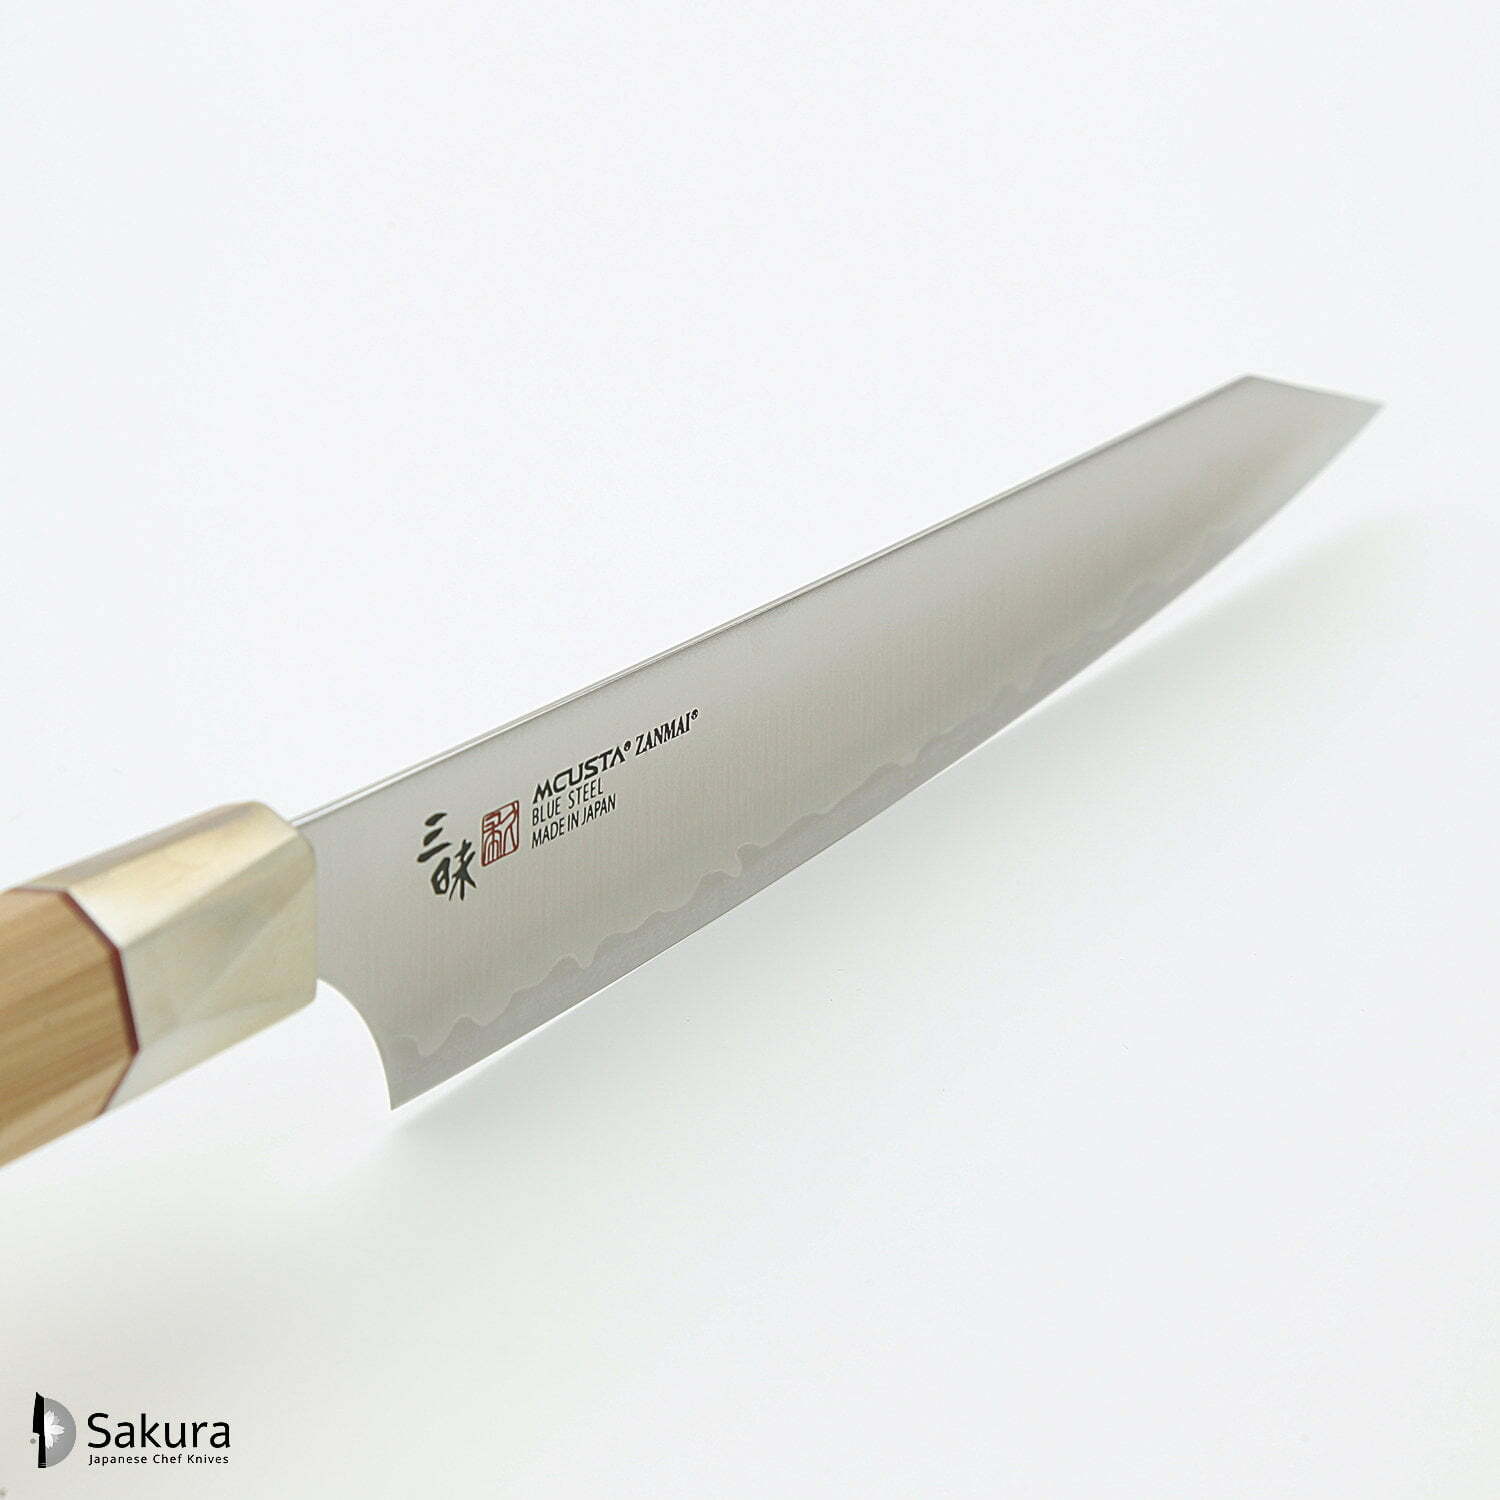 סכין עזר קטנה רב-תכליתית פֶּטִי 150מ״מ מחושלת בעבודת יד 3 שכבות: פלדת פחמן יפנית מתקדמת מסוג Aogami Super עטופה פלדת אל-חלד גימור מט מלוטש מקוסטה זאנמאיי יפן ZBX-5002B